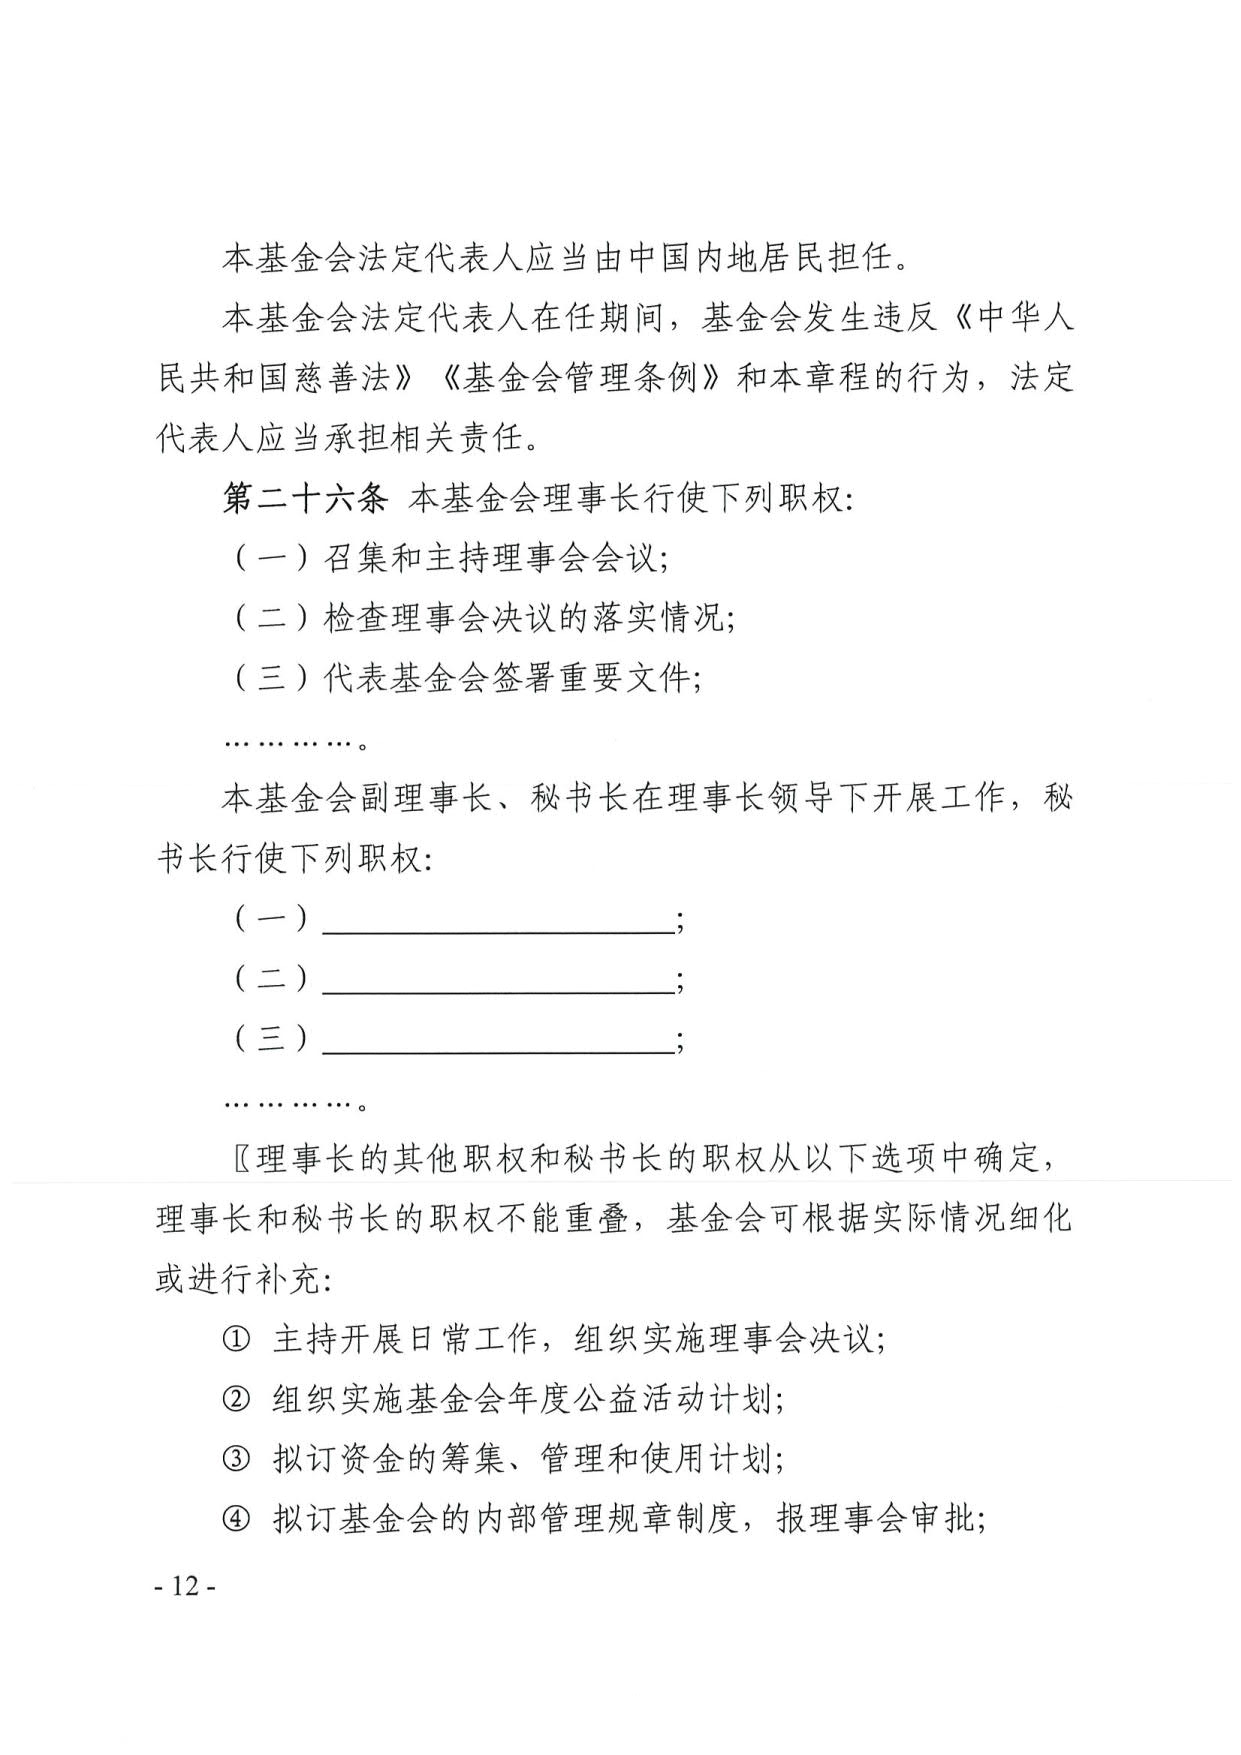 广东省民政厅关于印发《广东省基金会章程示范文本》的通知(4)_12.jpg